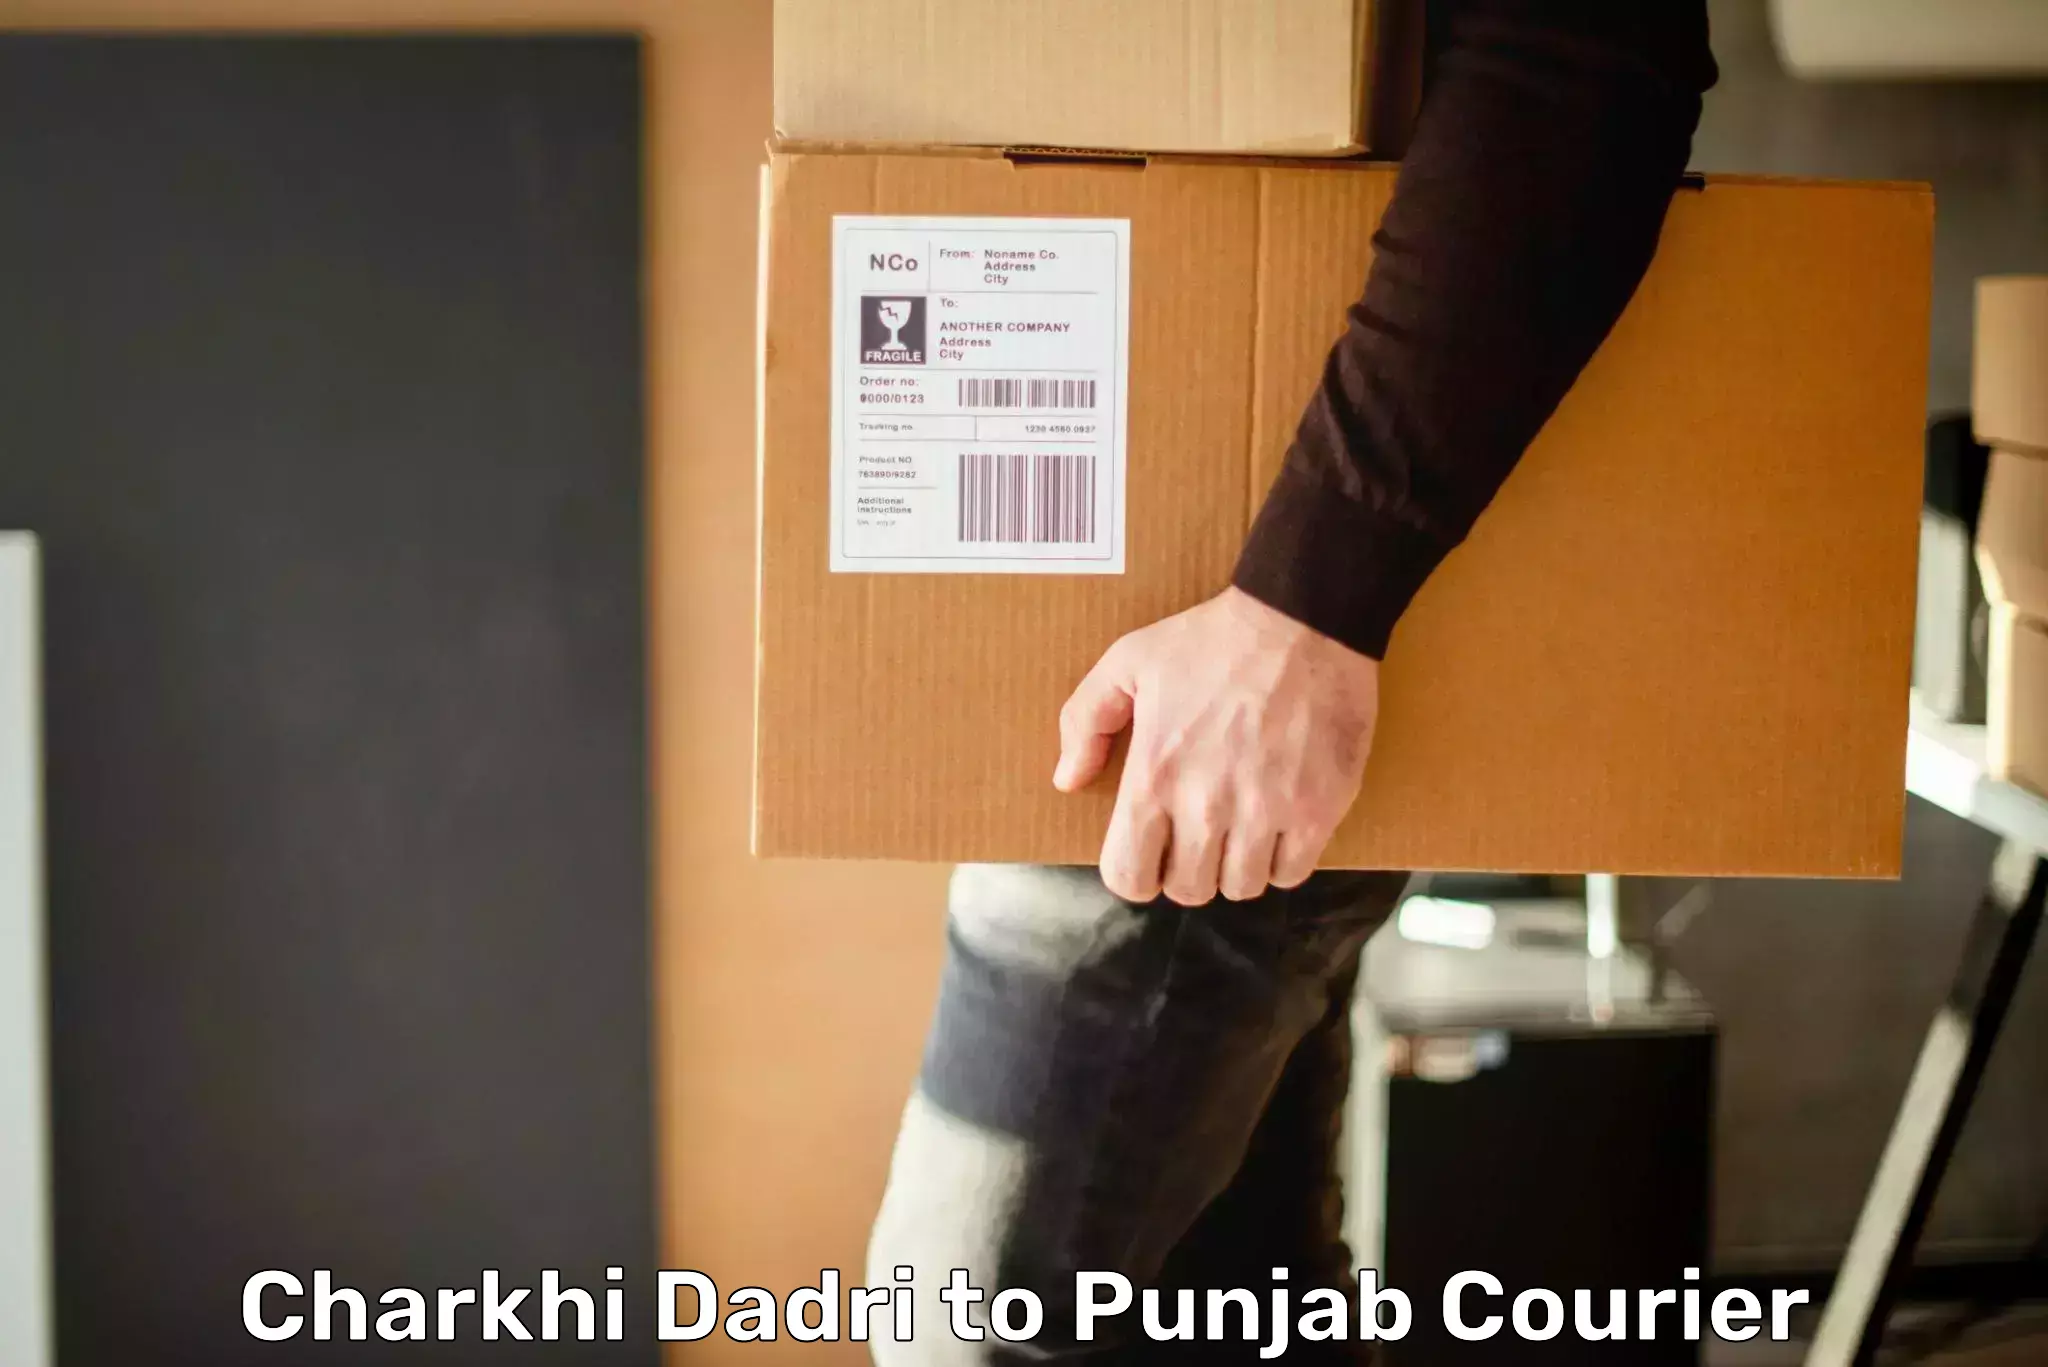 Door-to-door freight service Charkhi Dadri to Bathinda